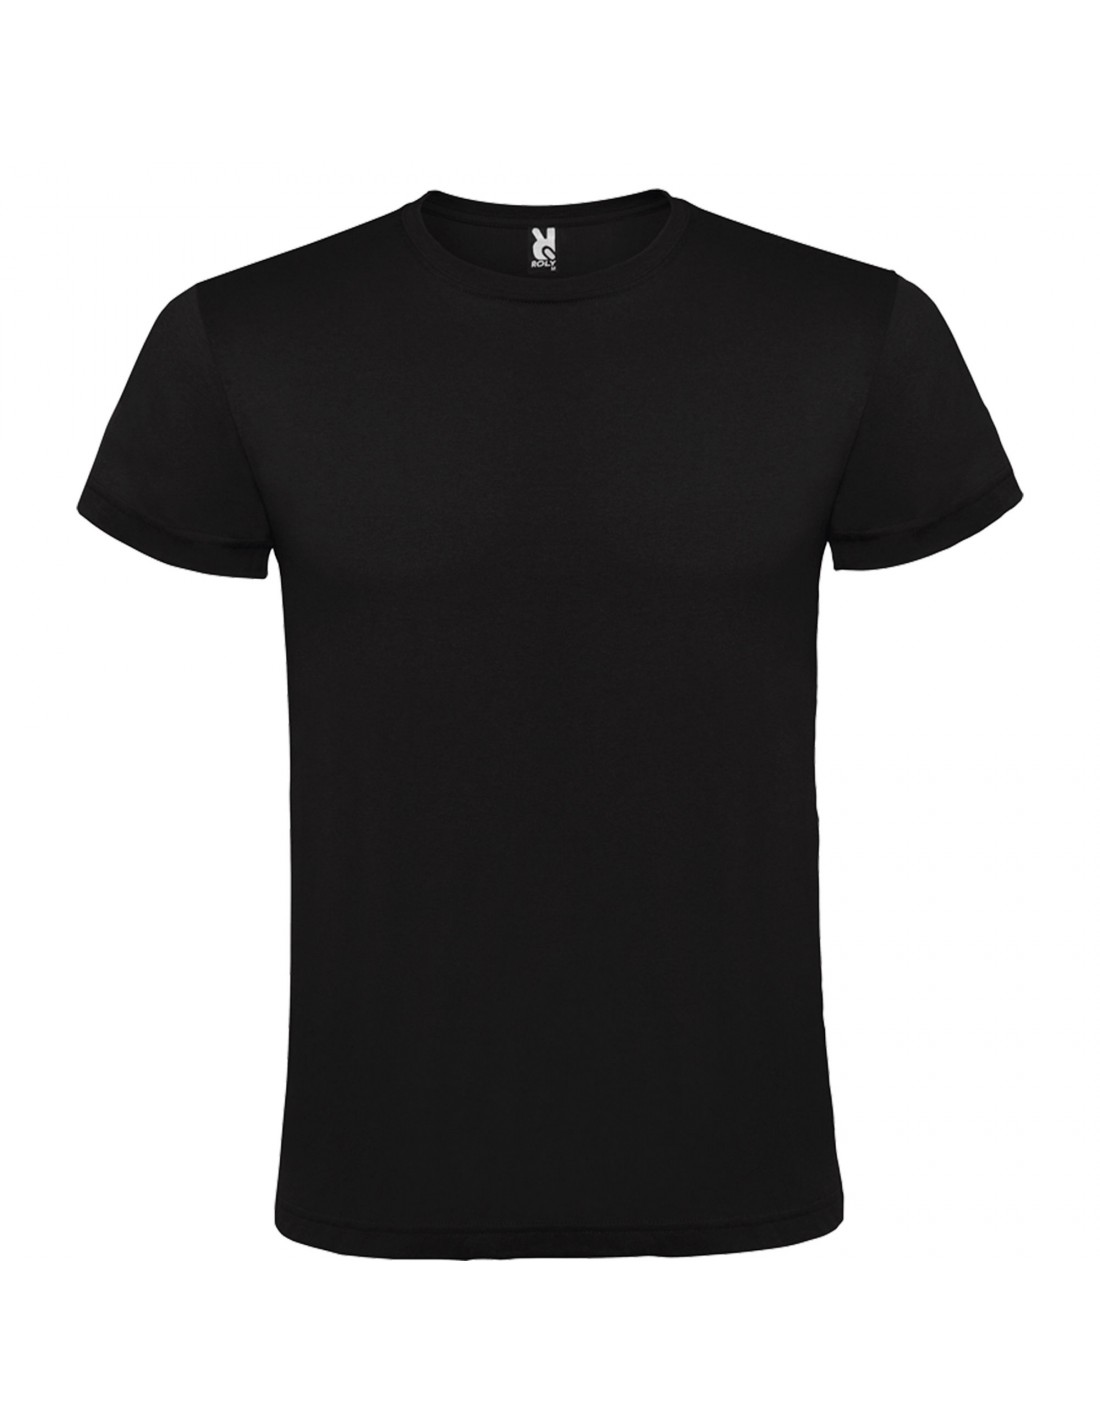 Camisetas negras para hombre